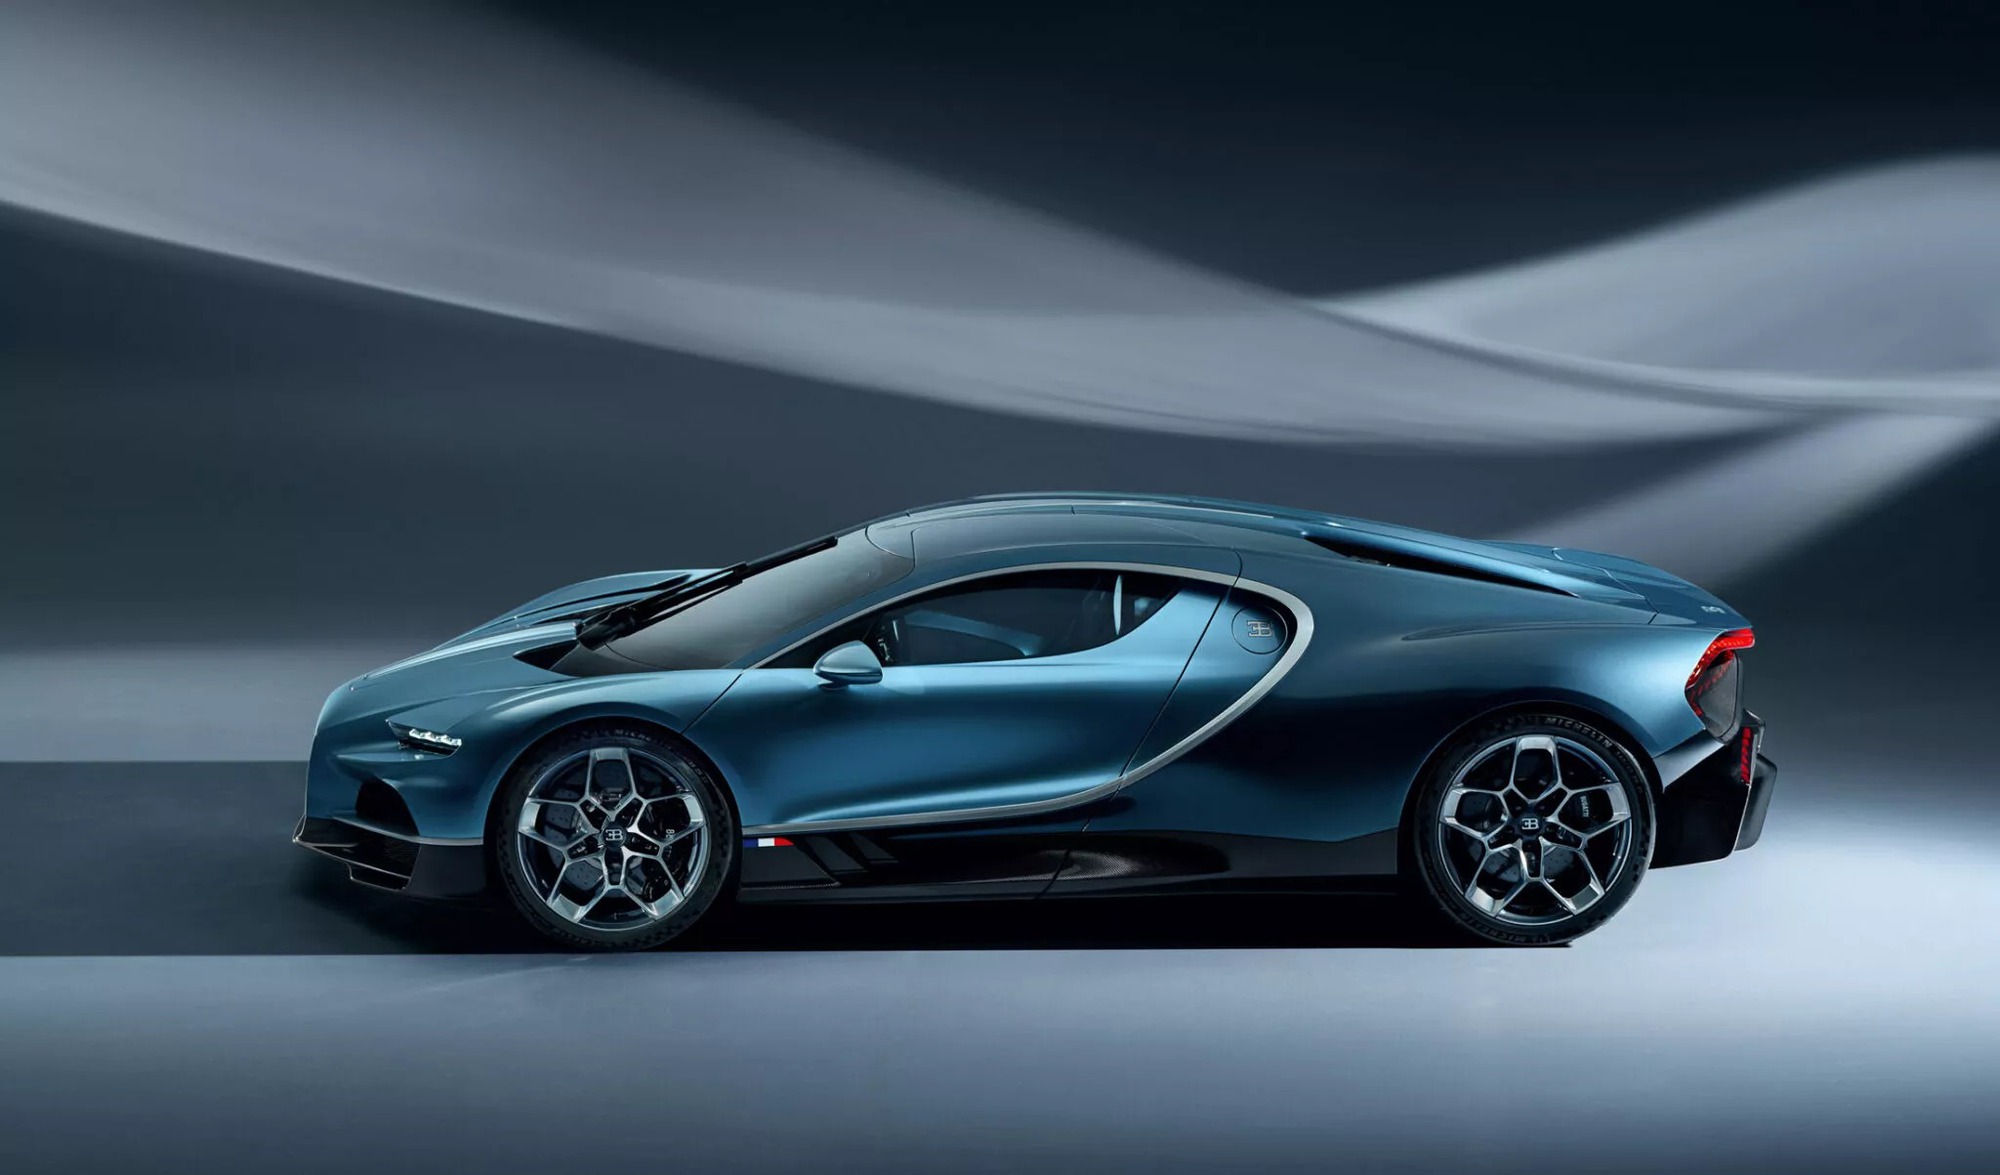 Bugatti Tourbillon Hybrid ra mắt: Mọi thông số khủng hơn Chiron, 0-100km/h chỉ trong 2 giây, tối đa 445km/h- Ảnh 5.